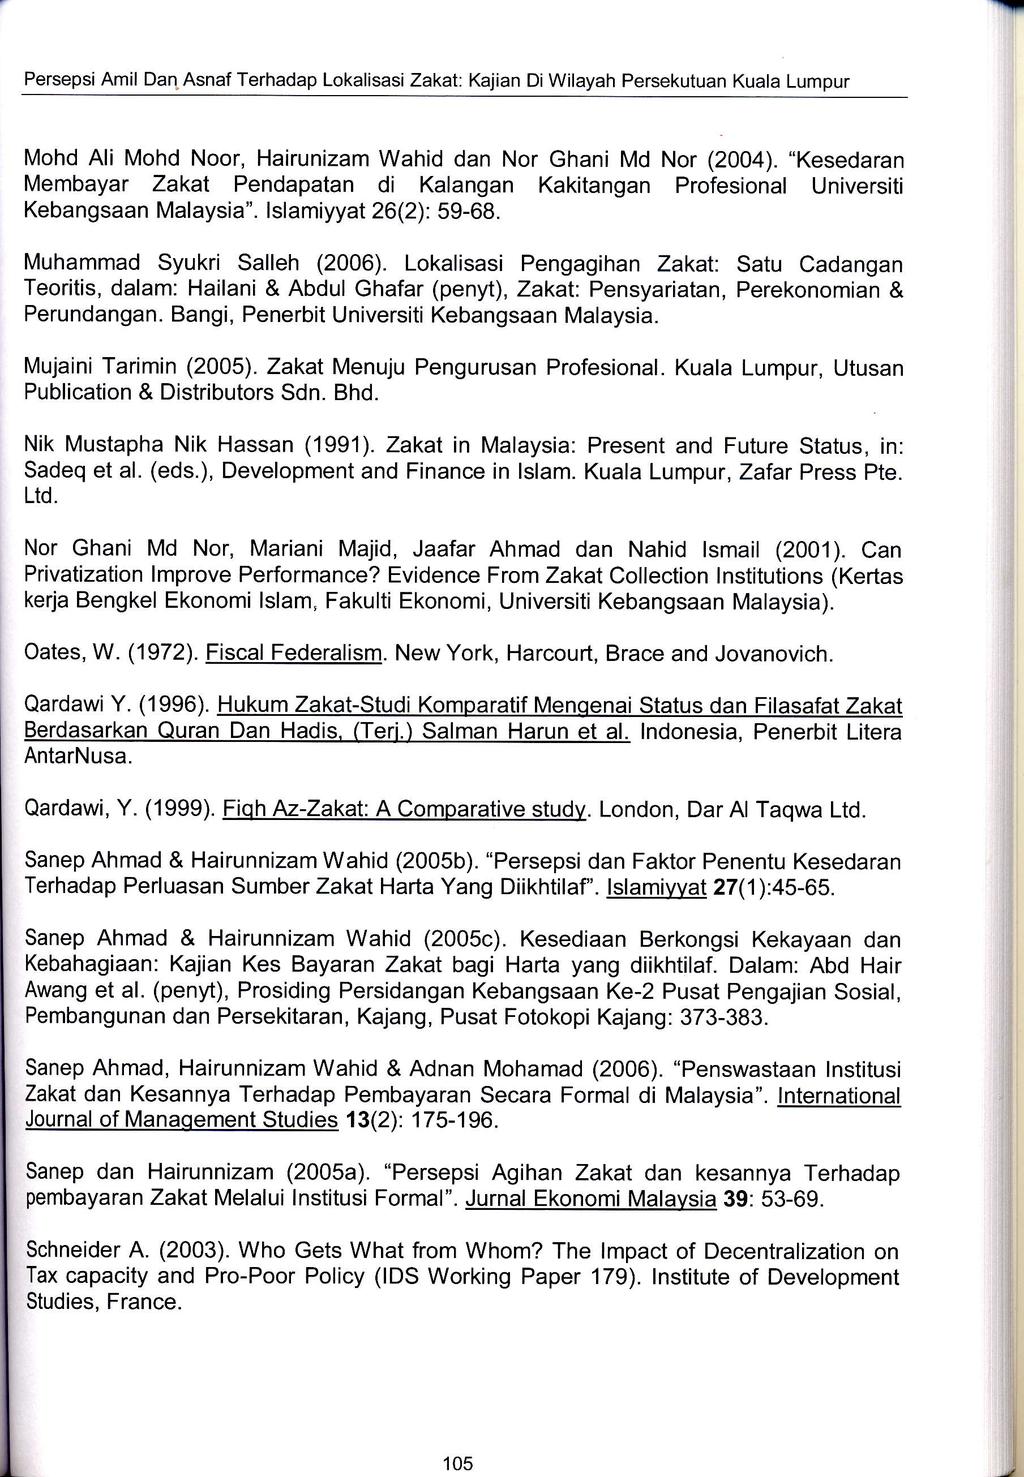 105, J Persepsi Amil Dan. Asnaf Terhadap Lokalisasi Zakat: Kajian Di Wilayah Persekutuan Kuala Lumpur Mohd Ali Mohd Noor, Hairunizam Wahid dan Nor Ghani Md Nor (2004).